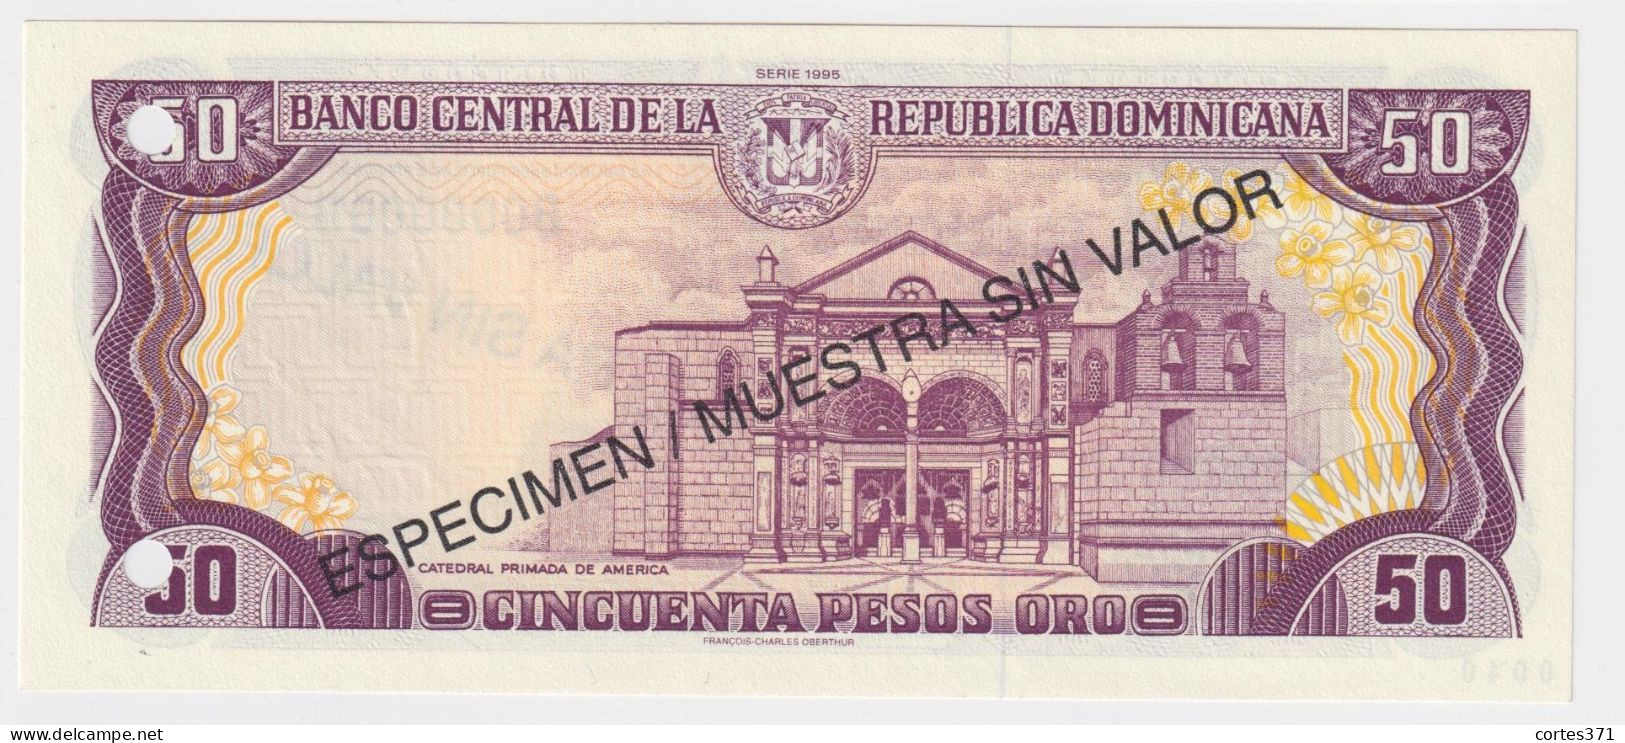 Dominican Republic 5, 10, 50, 100, 500 Pesos Oro 1995 P-147s - P-151s SPECIMEN UNC